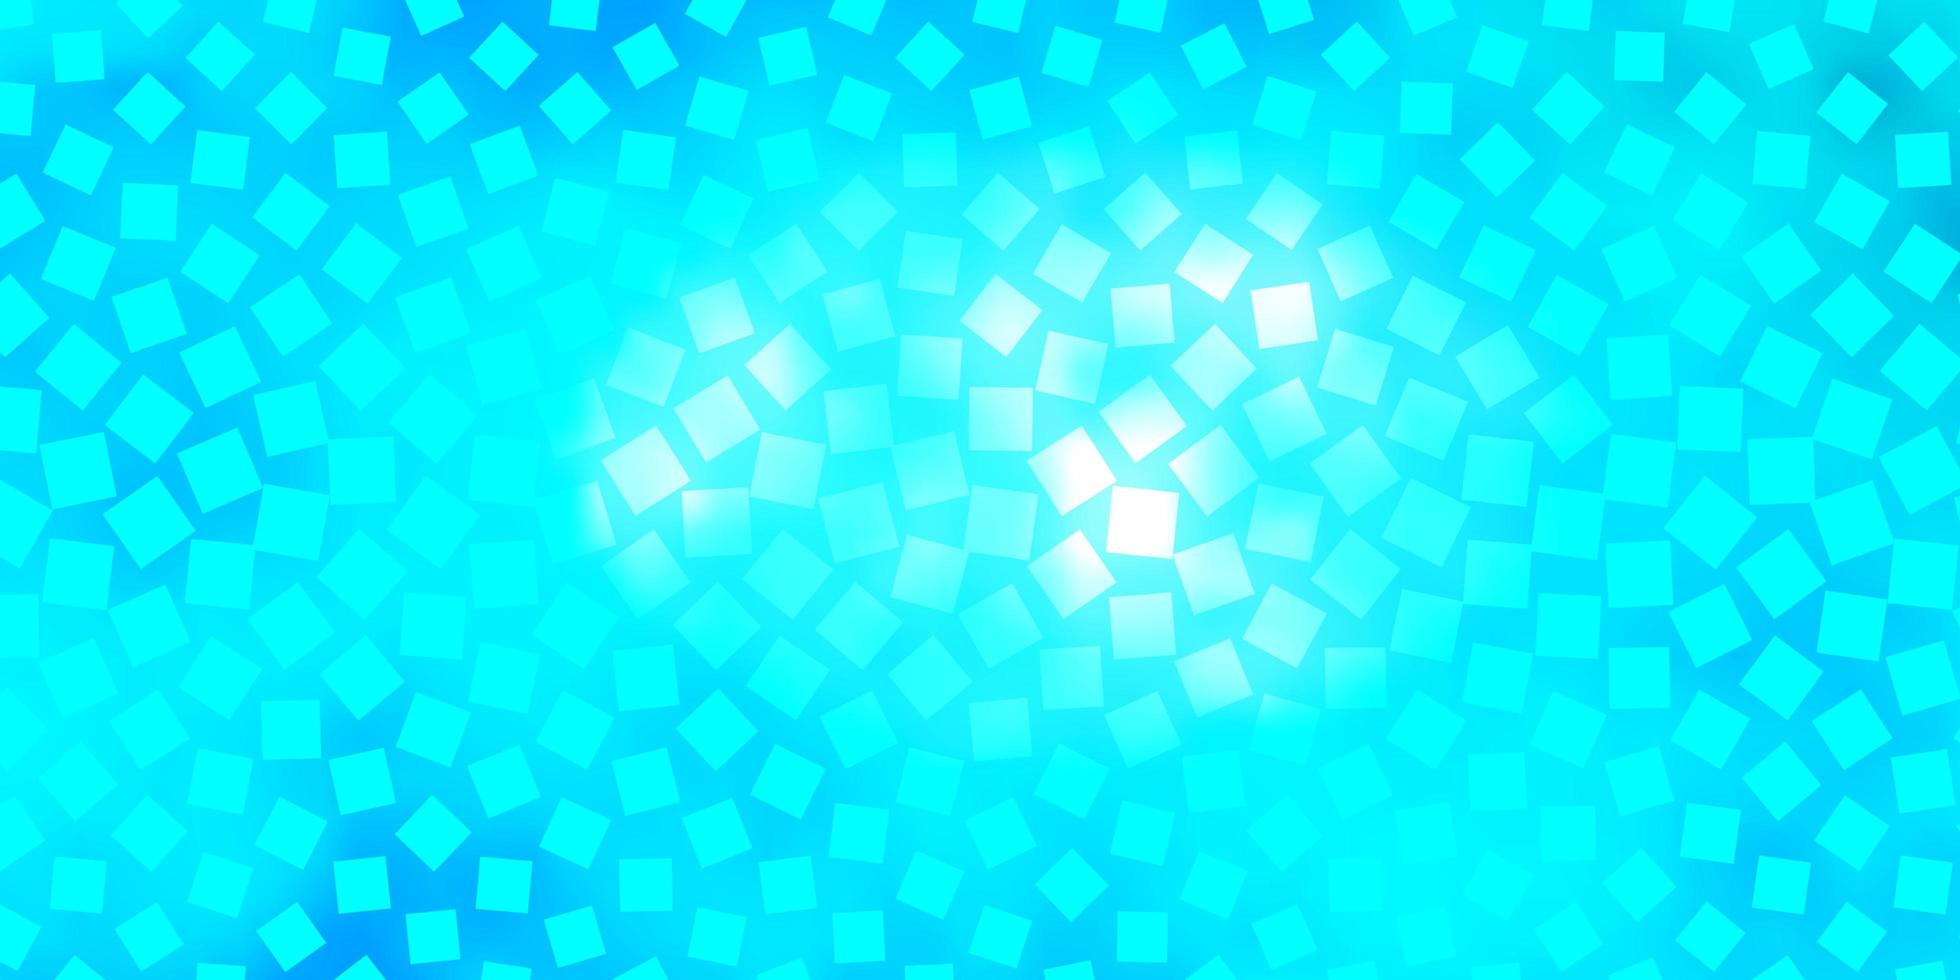 plantilla de vector azul claro en rectángulos